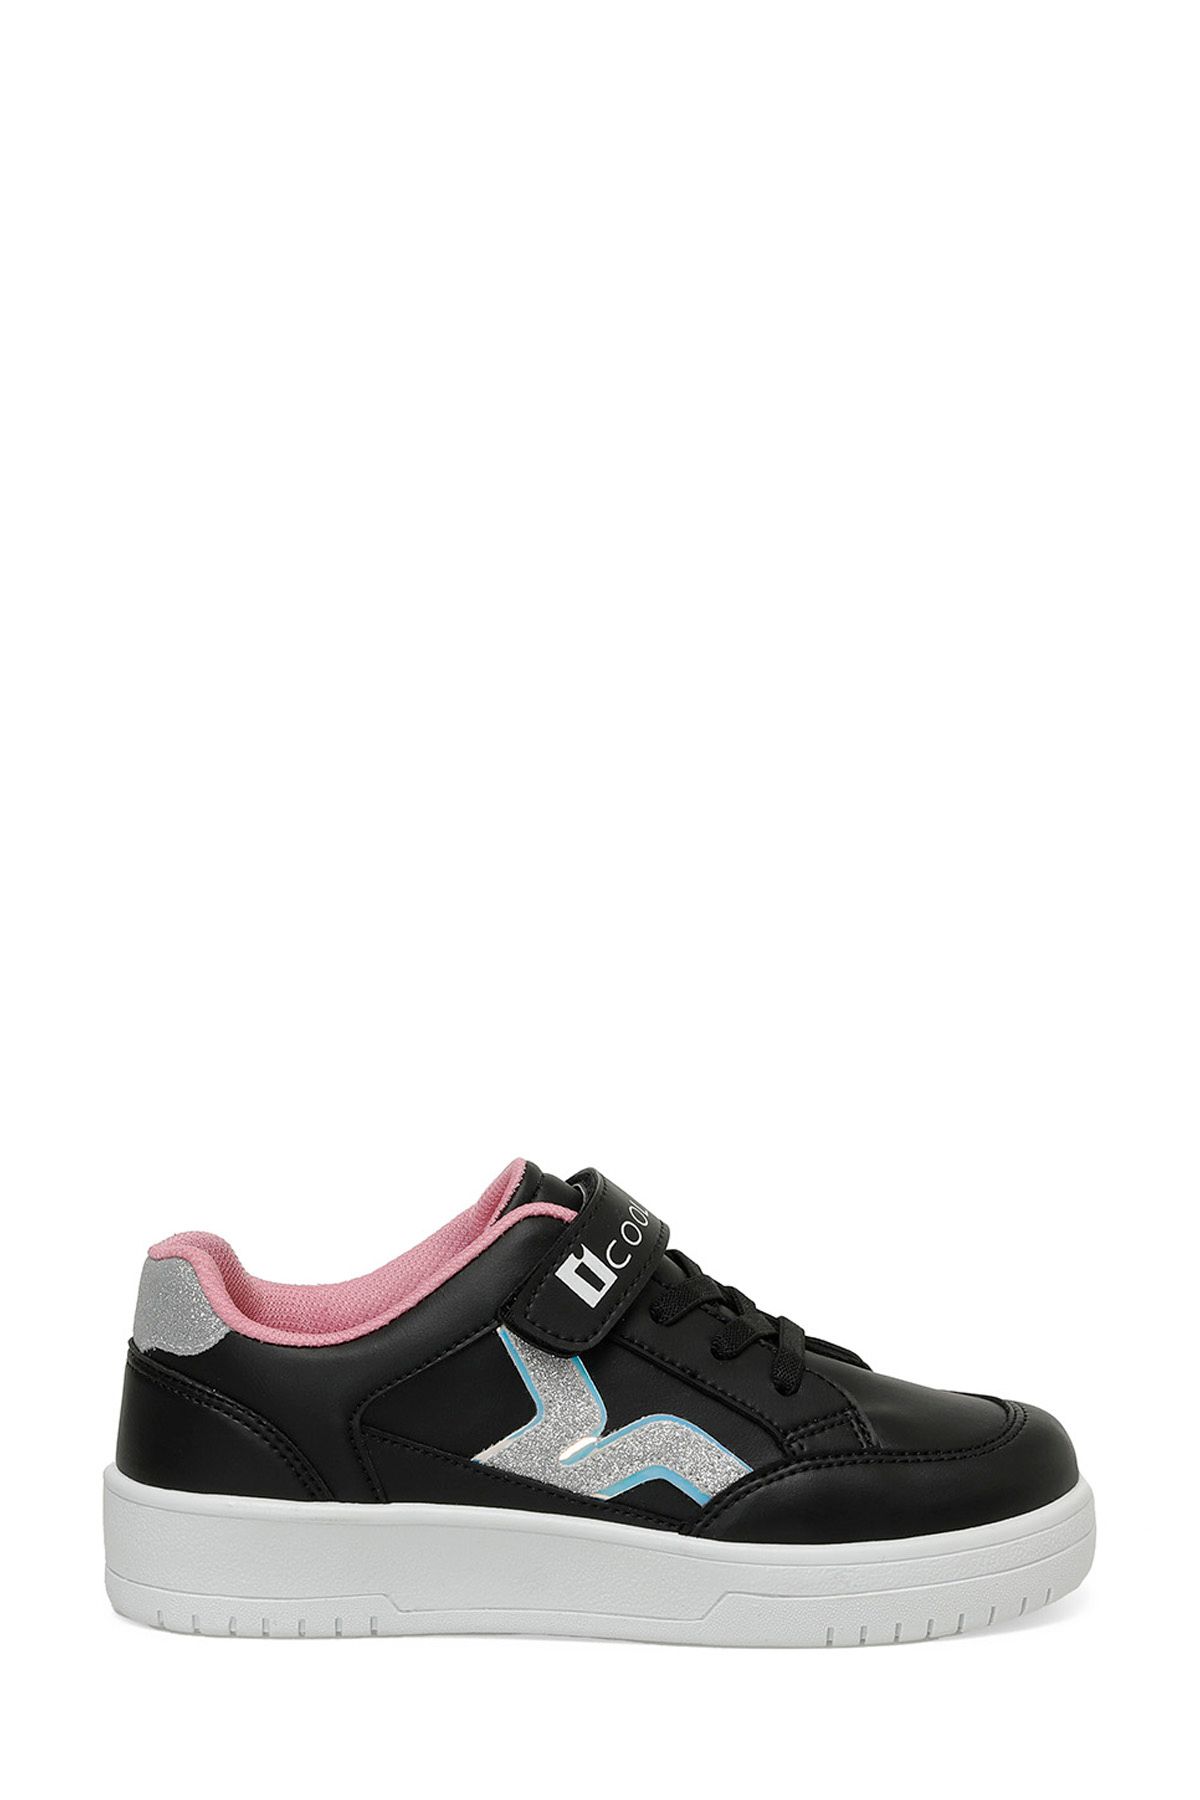 Icool RADO 4FX Siyah Kız Çocuk Sneaker